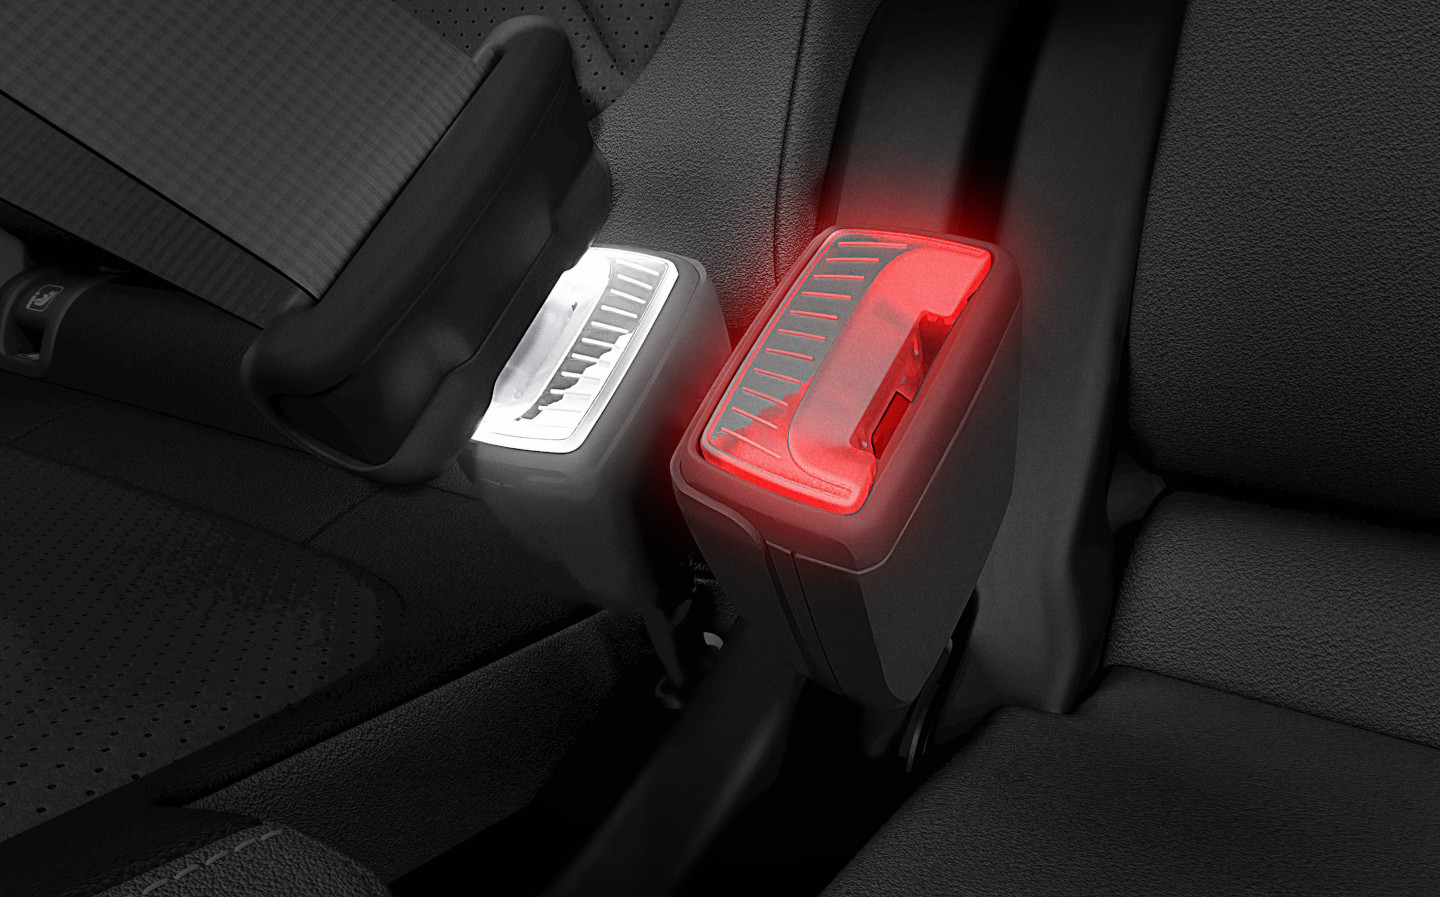 Skoda is working on glow-in-the-dark seatbelts